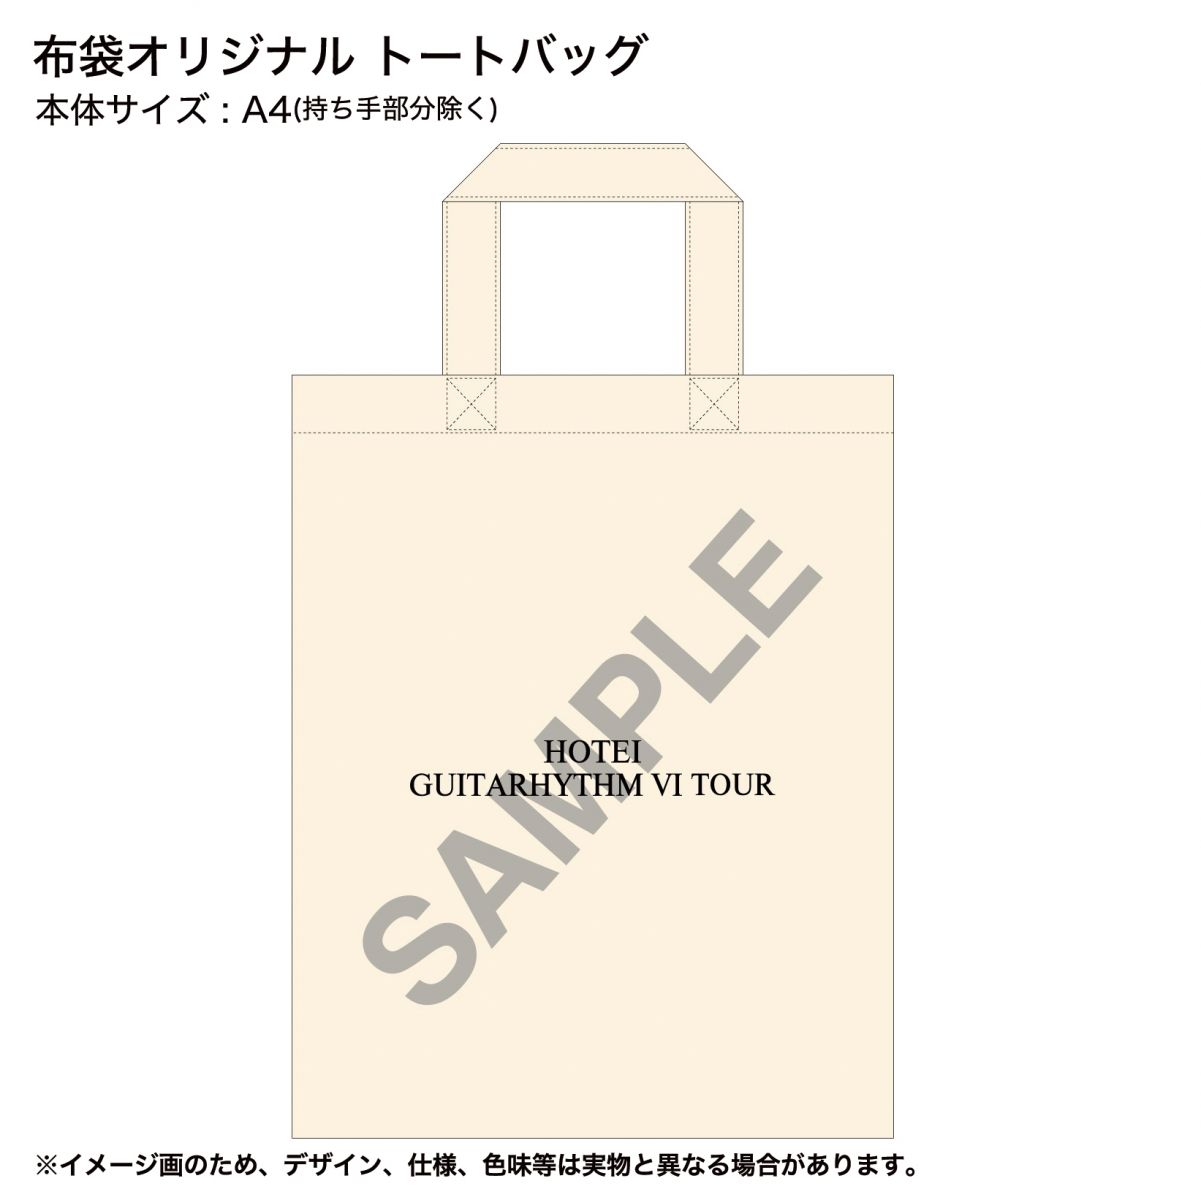 映像作品『GUITARHYTHM VI TOUR』 Amazon.co.jp 購入者特典情報 ...